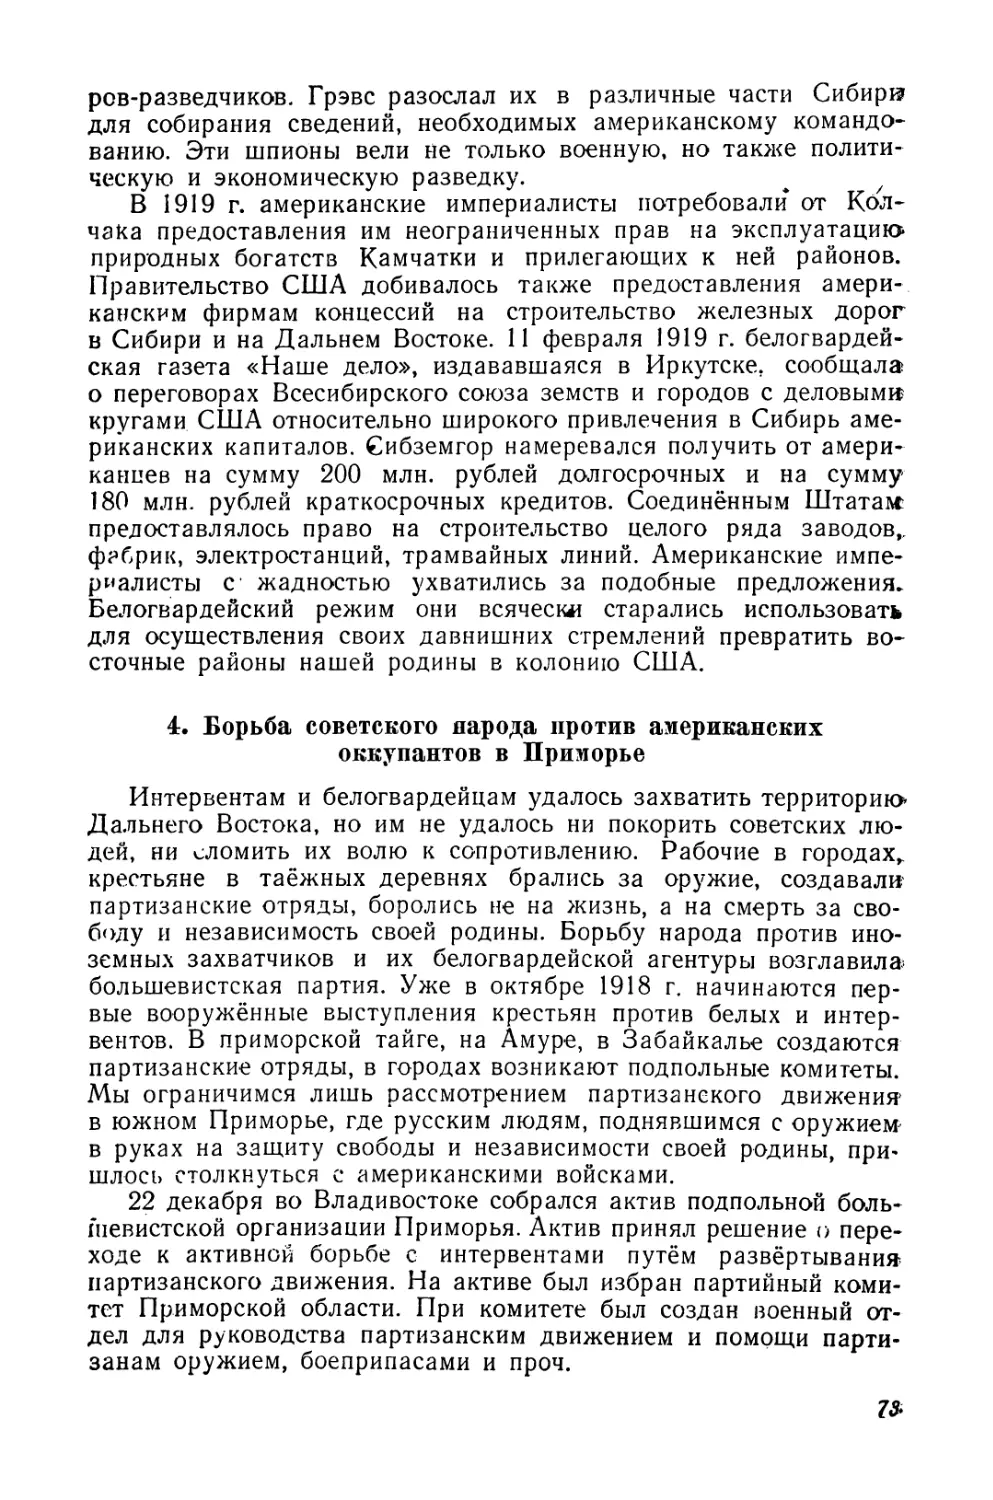 4. Борьба советского народа против американских оккупантов в Приморье